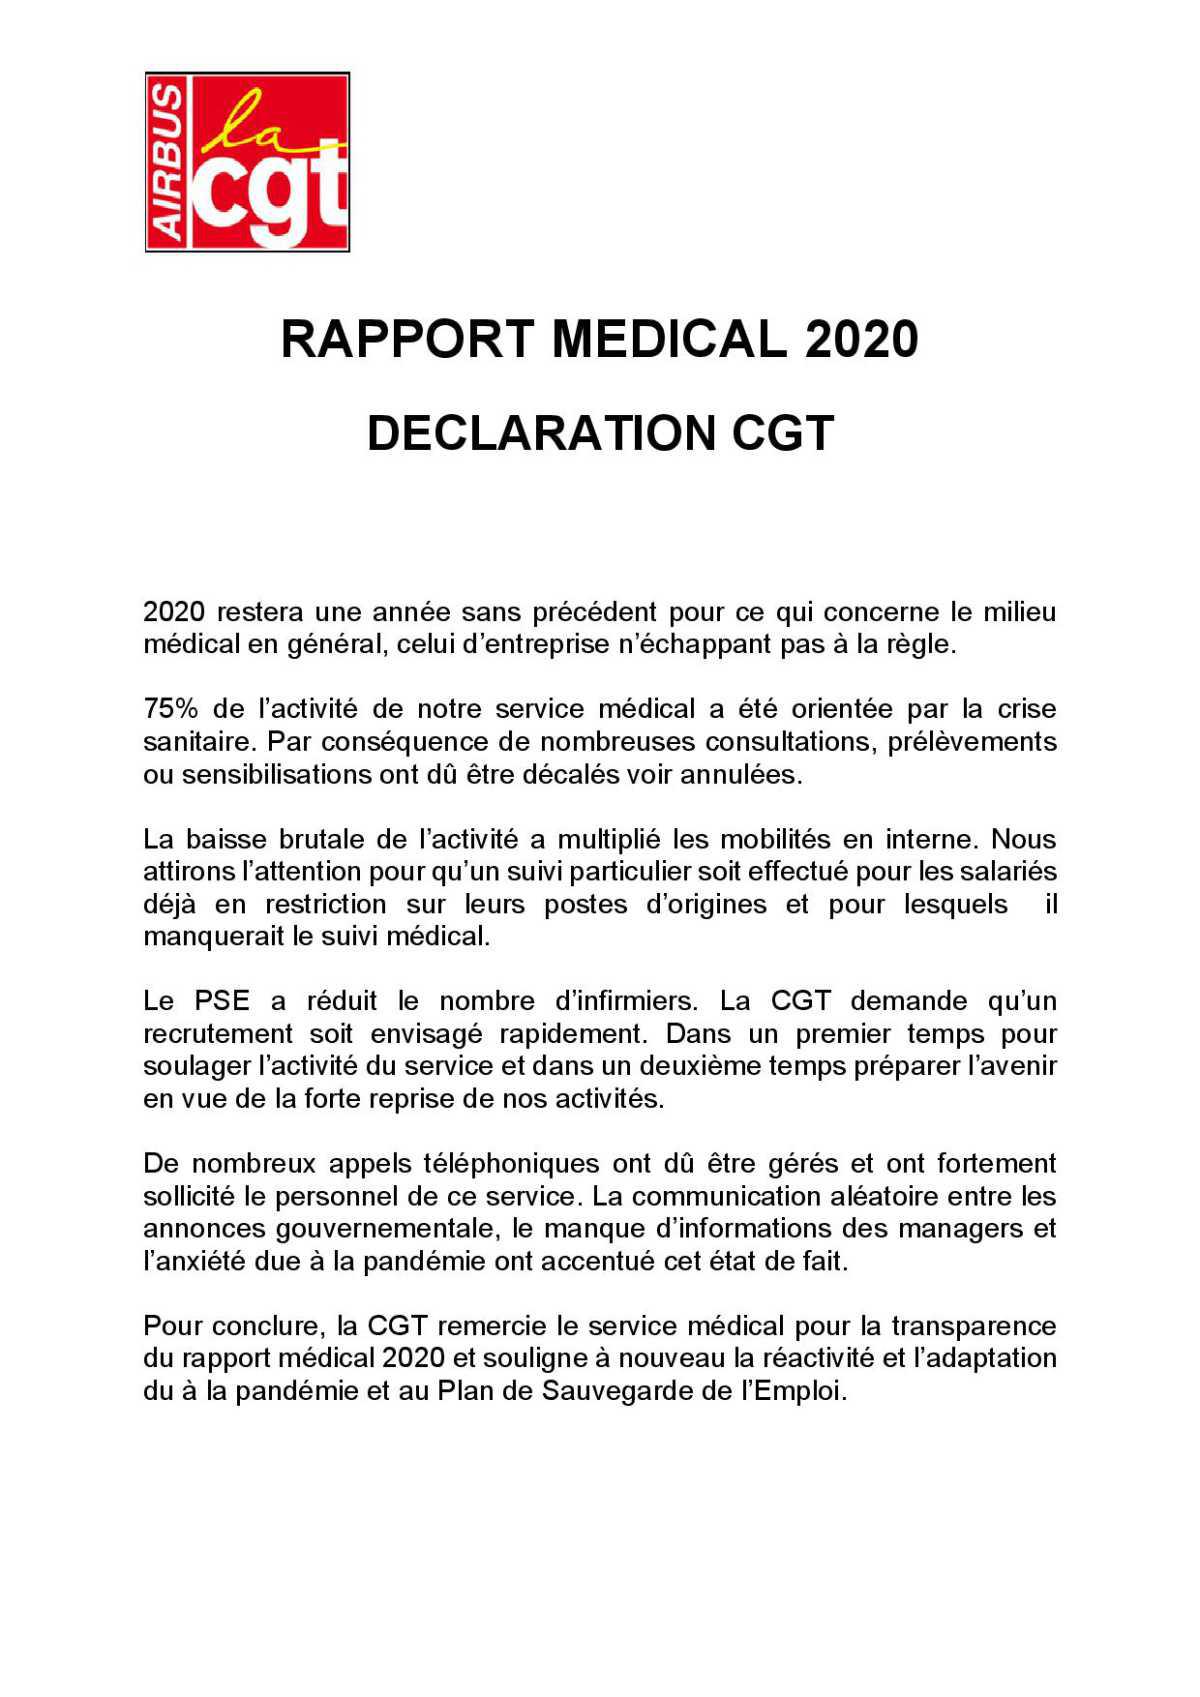 RAPPORT MEDICAL 2020 Déclaration CGT au CSE